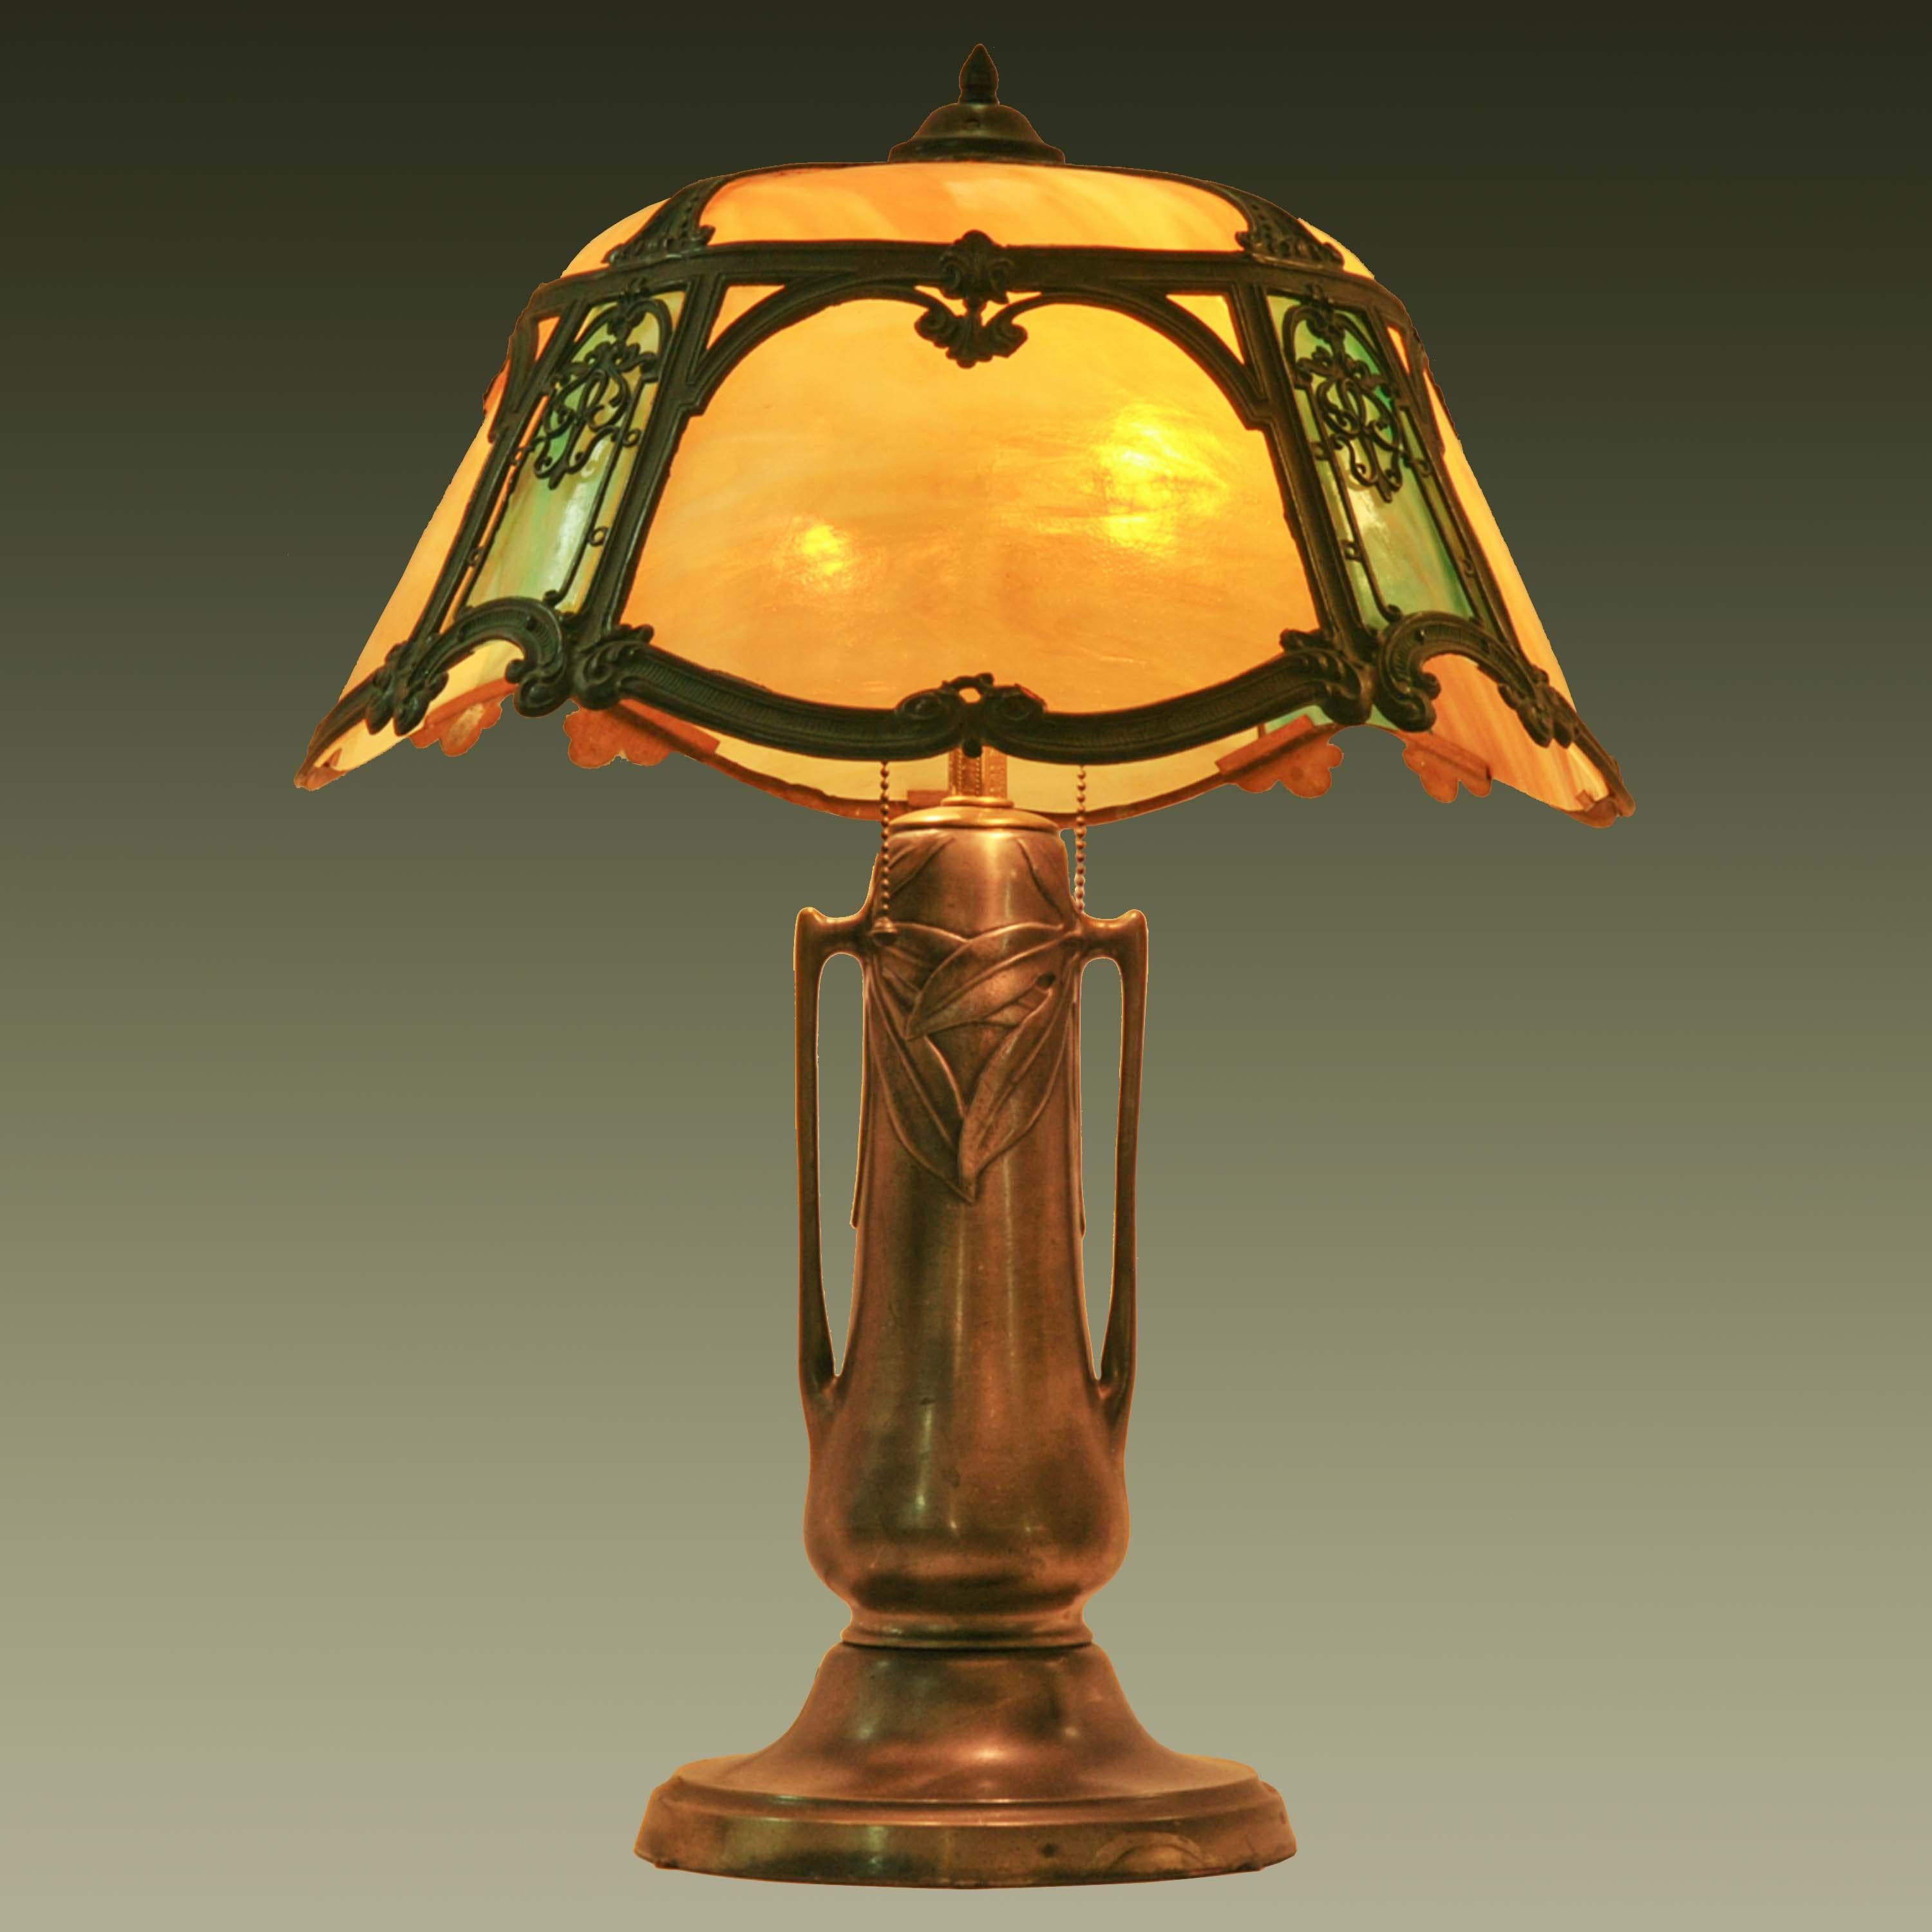 Antique American Art Nouveau Craftsman Mission Table Lamp Bronze Slag Glass 1910 For Sale 3